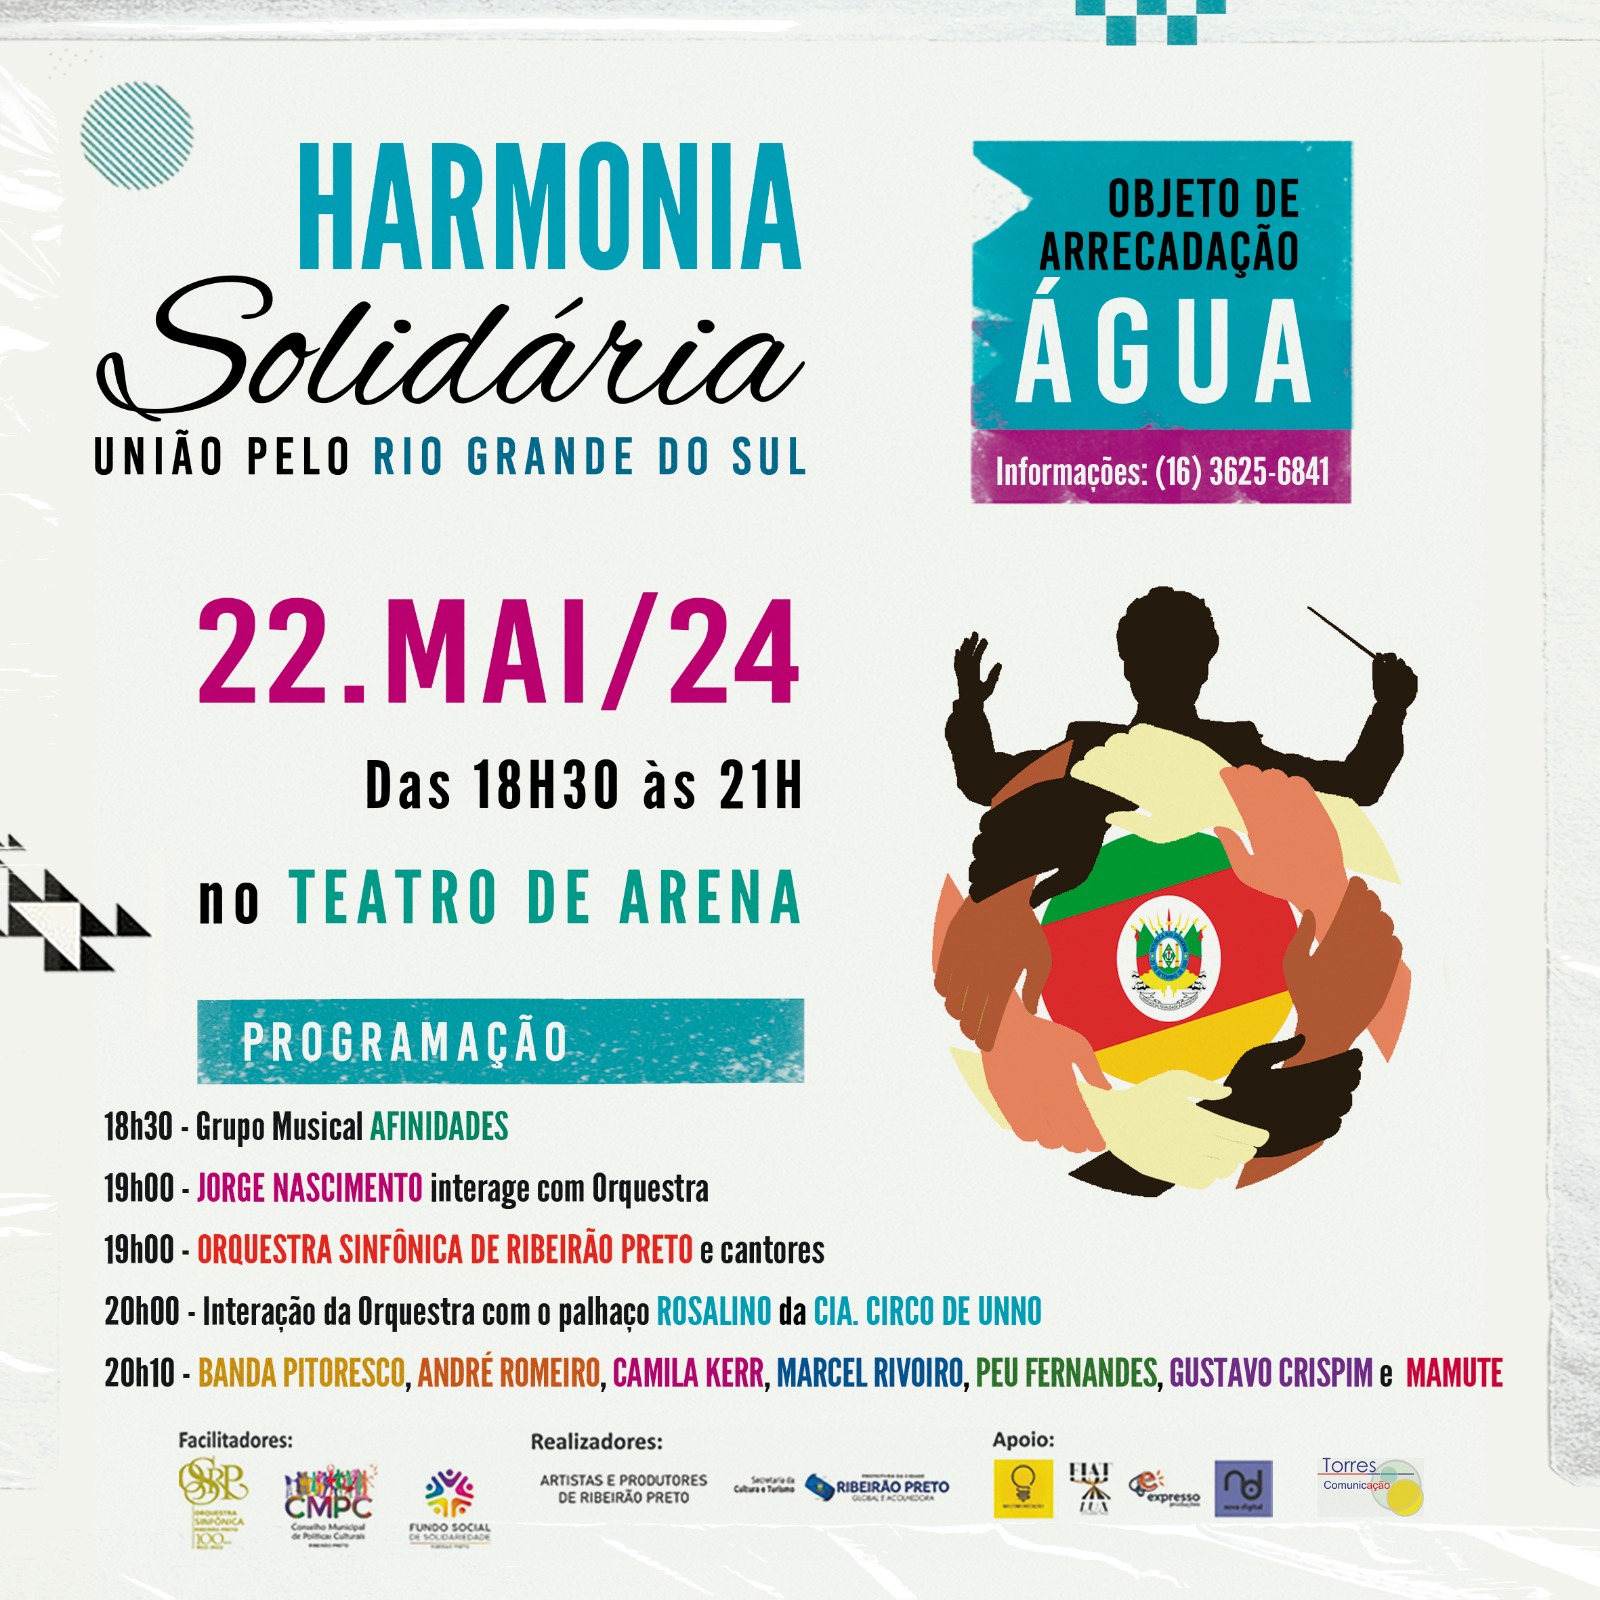 Artistas e Produtores culturais de Ribeirão Preto promovem show, nesta quarta-feira, no Teatro de Arena em solidariedade ao povo gaúcho